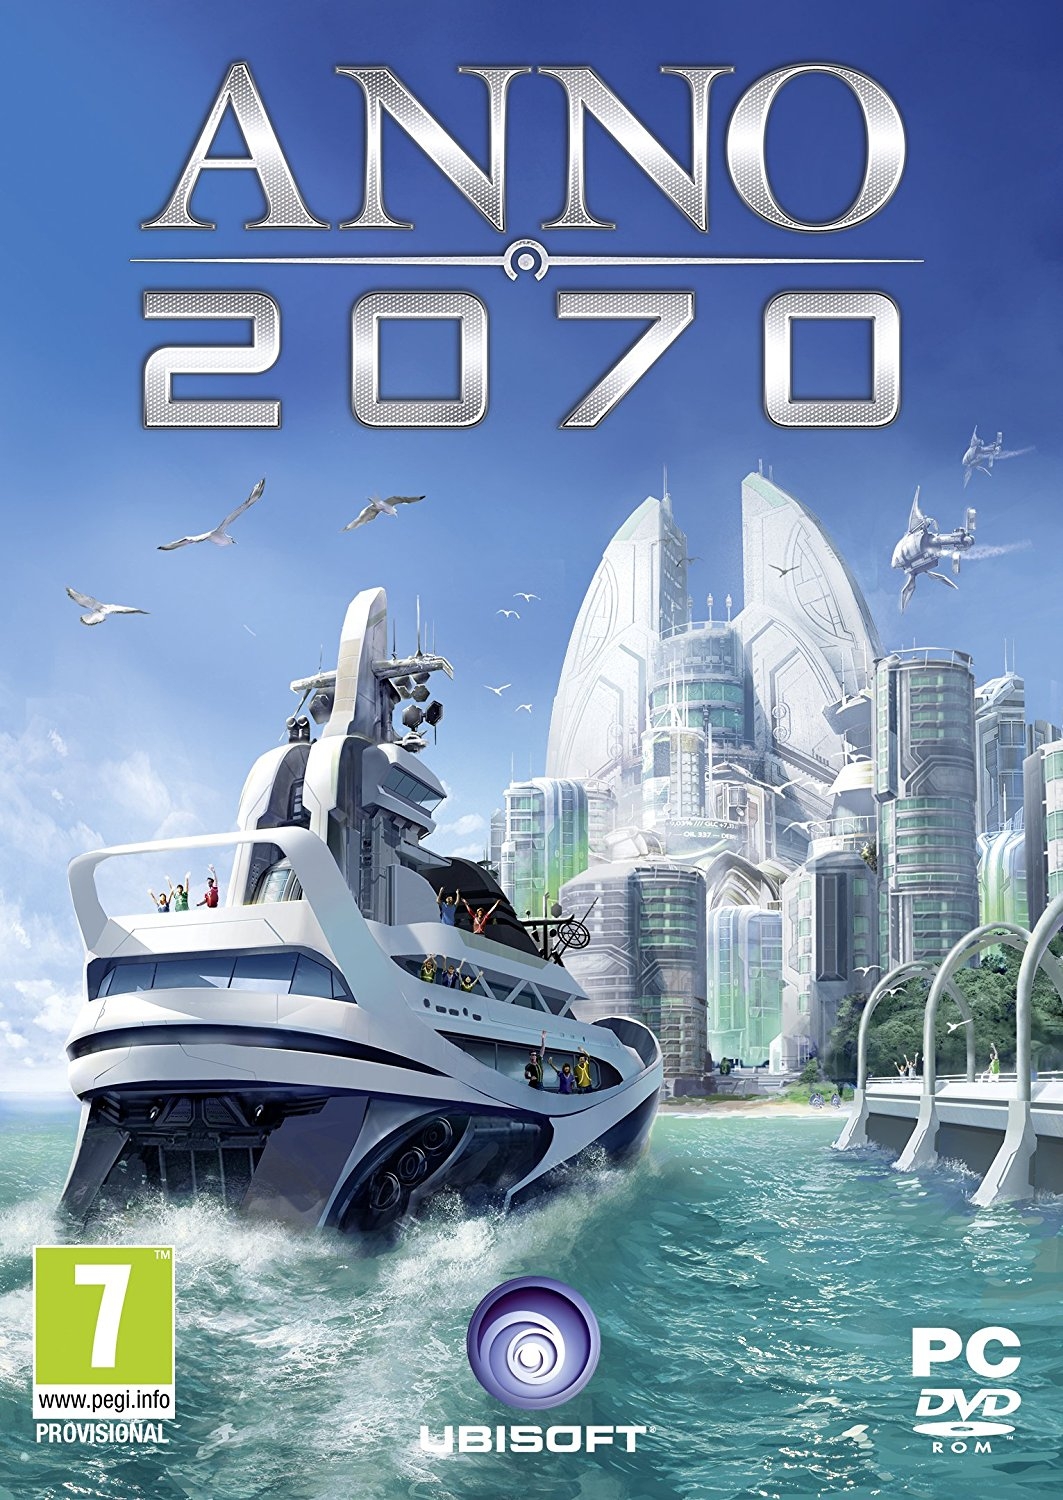 PC ANNO 2070